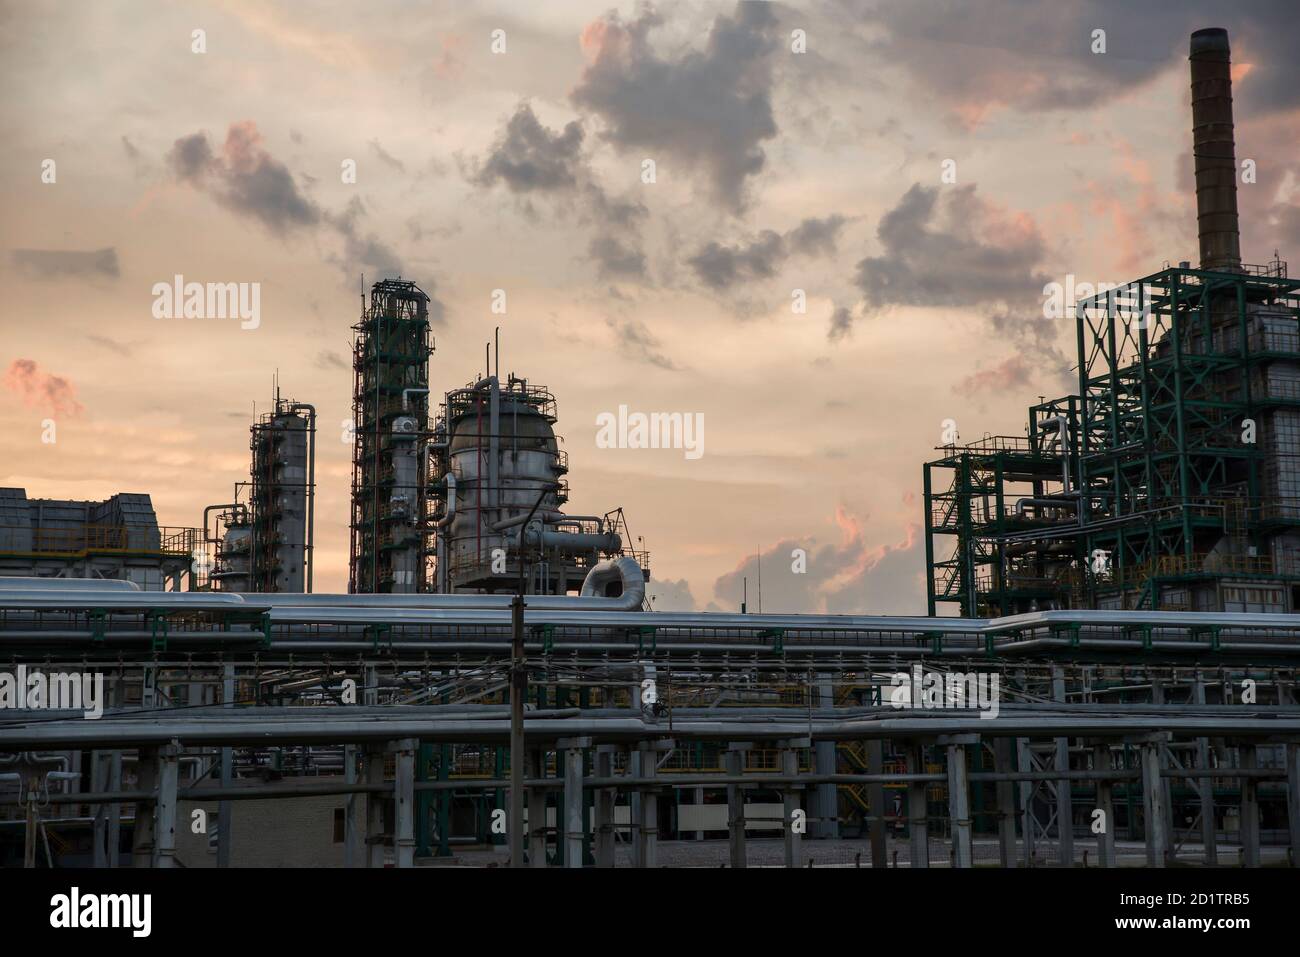 Tour de raffinerie dans une usine pétrochimique à ciel nuageux. Après le coucher du soleil. Banque D'Images